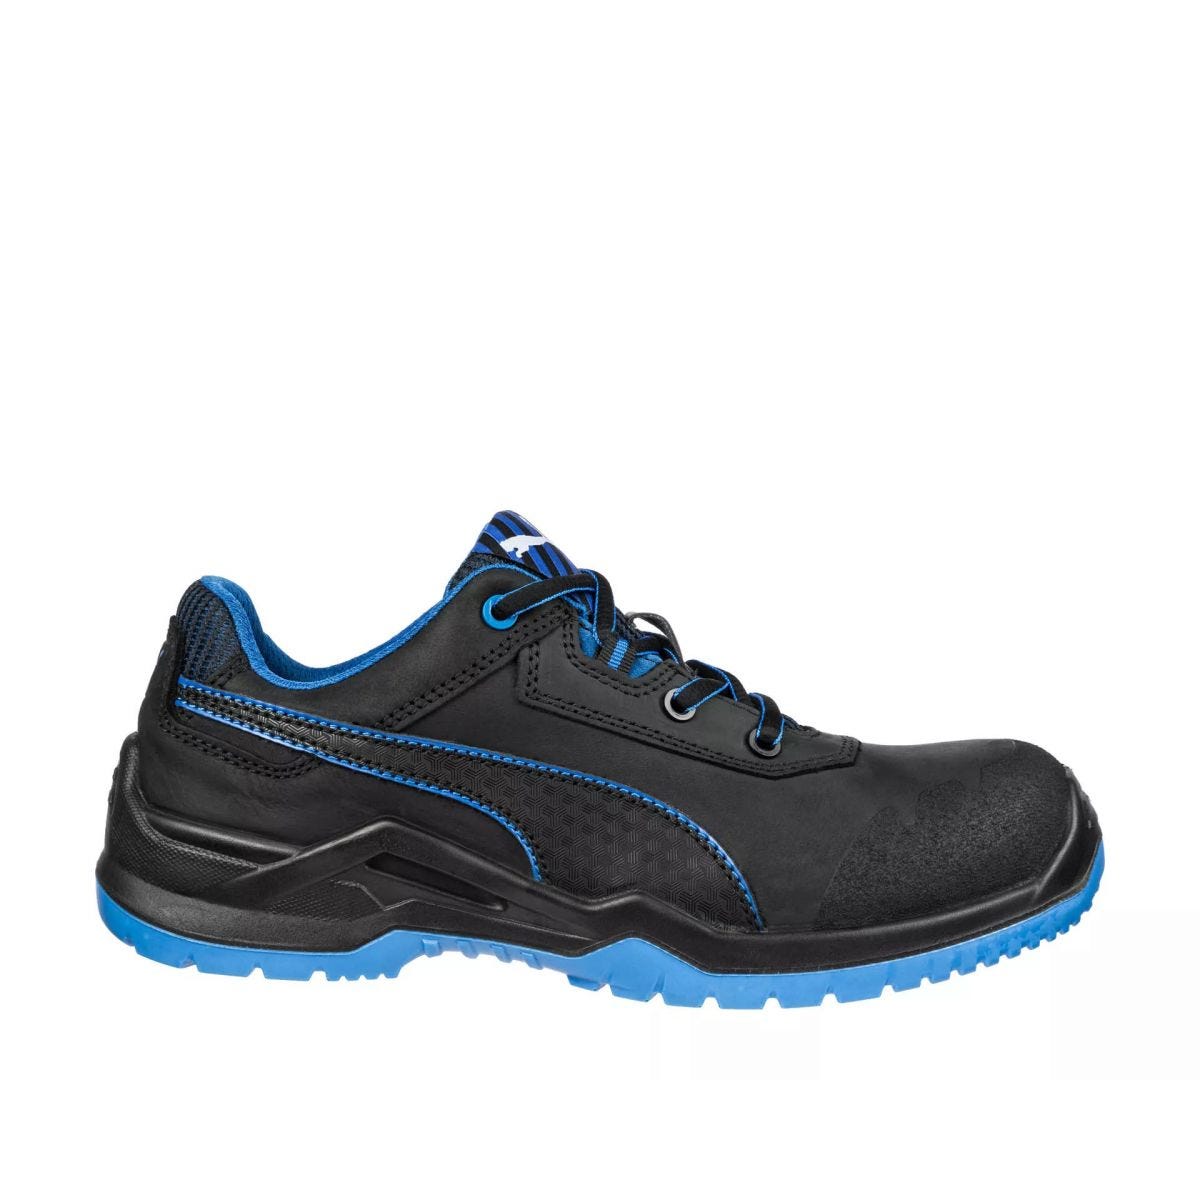 Chaussures de sécurité Argon RX low S3 ESD SRC bleu - Puma - Taille 49 0